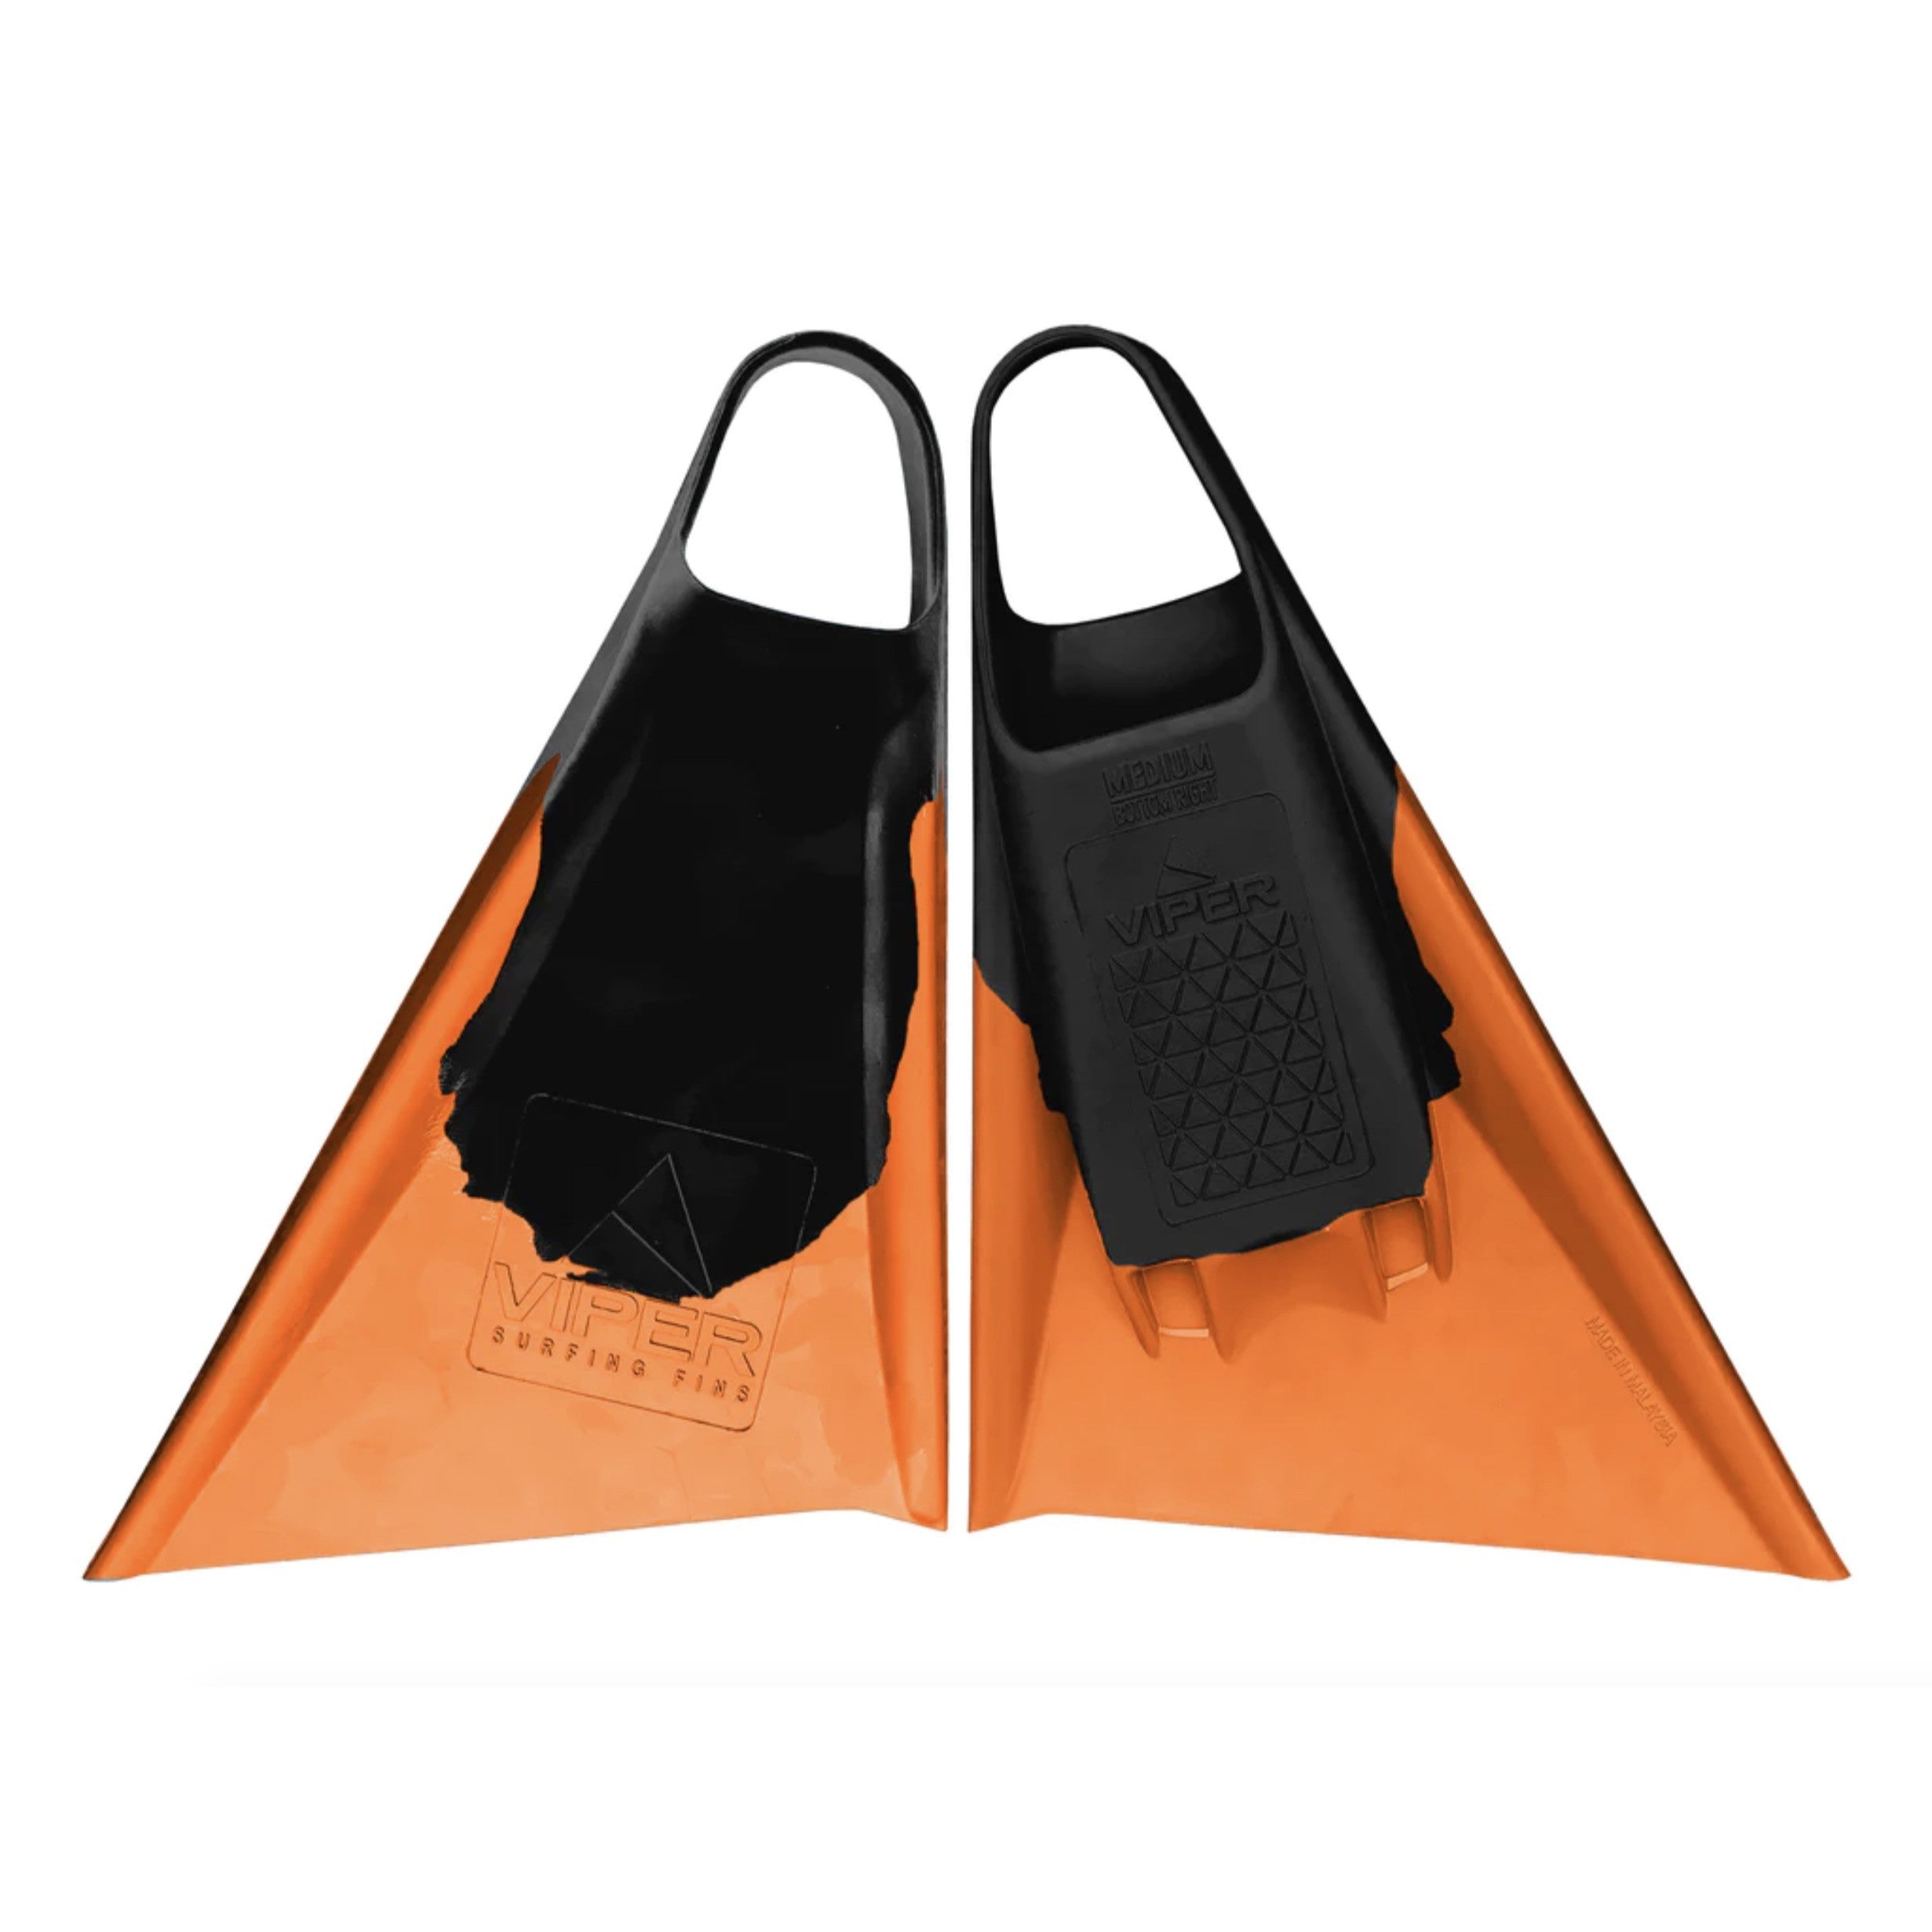 MS VIPER Delta Icons - Bodyboard Fins - Black / Orange